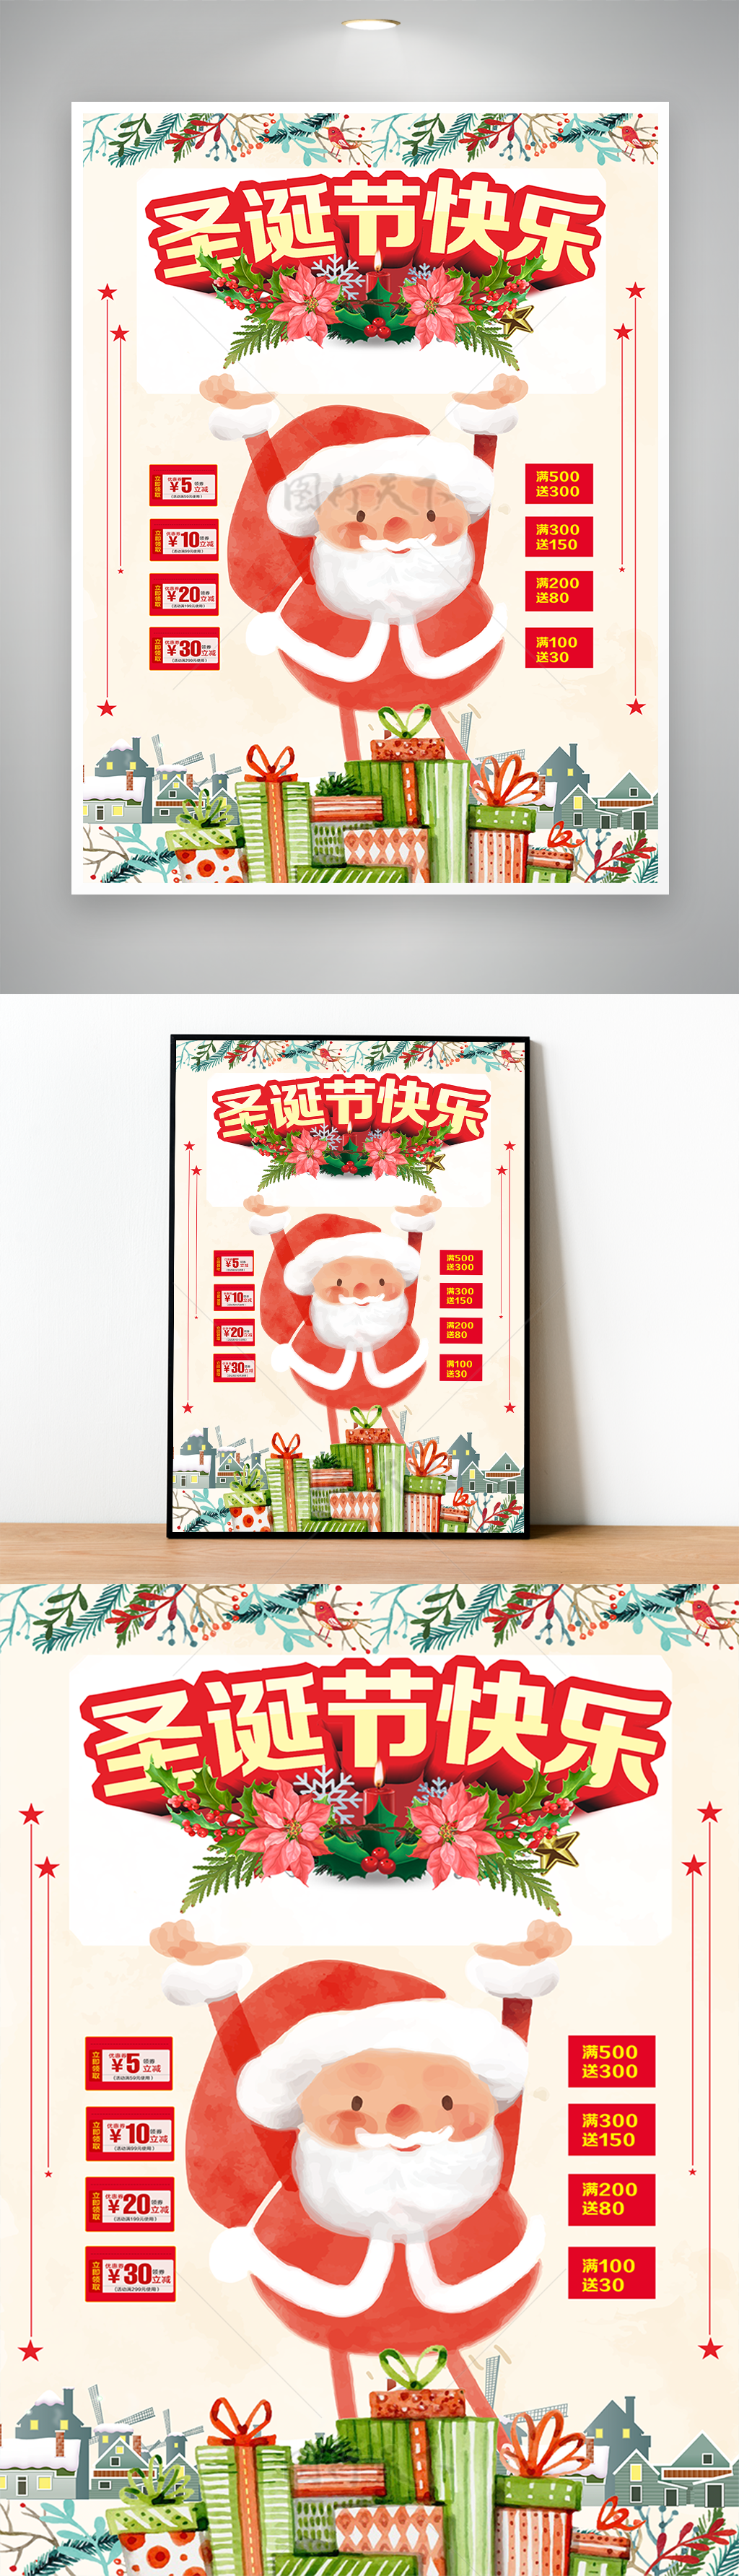 圣诞节创意促销海报